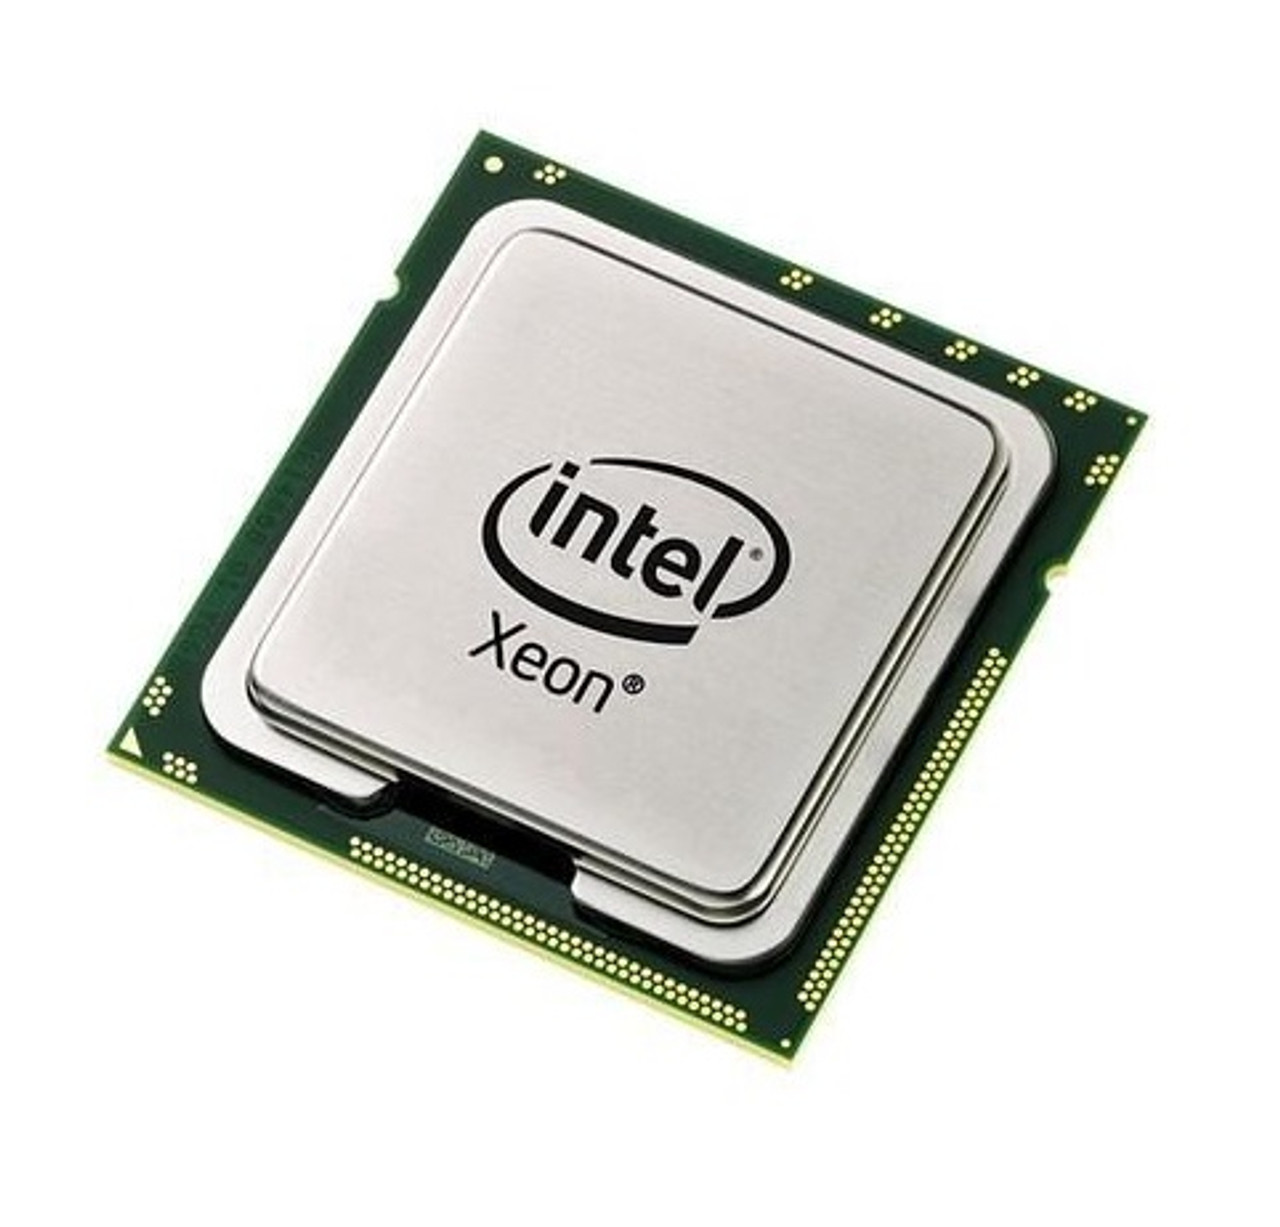 W3680 - Intel Xeon W3680 6 Core 3.33GHz 6.40GT/s QPI 12MB L3 Cache Processor